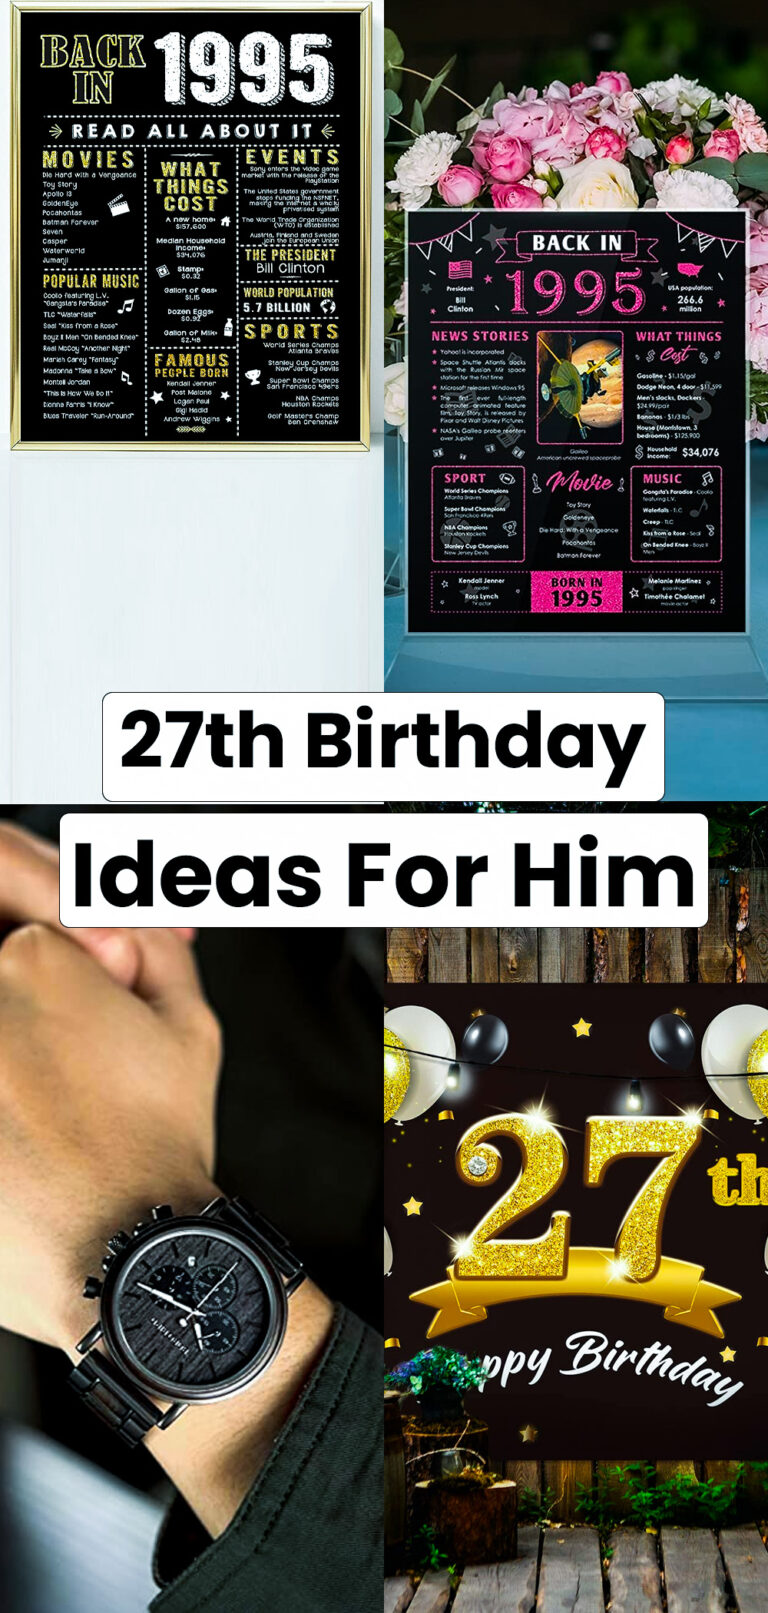 27th Birthday Ideas for Him